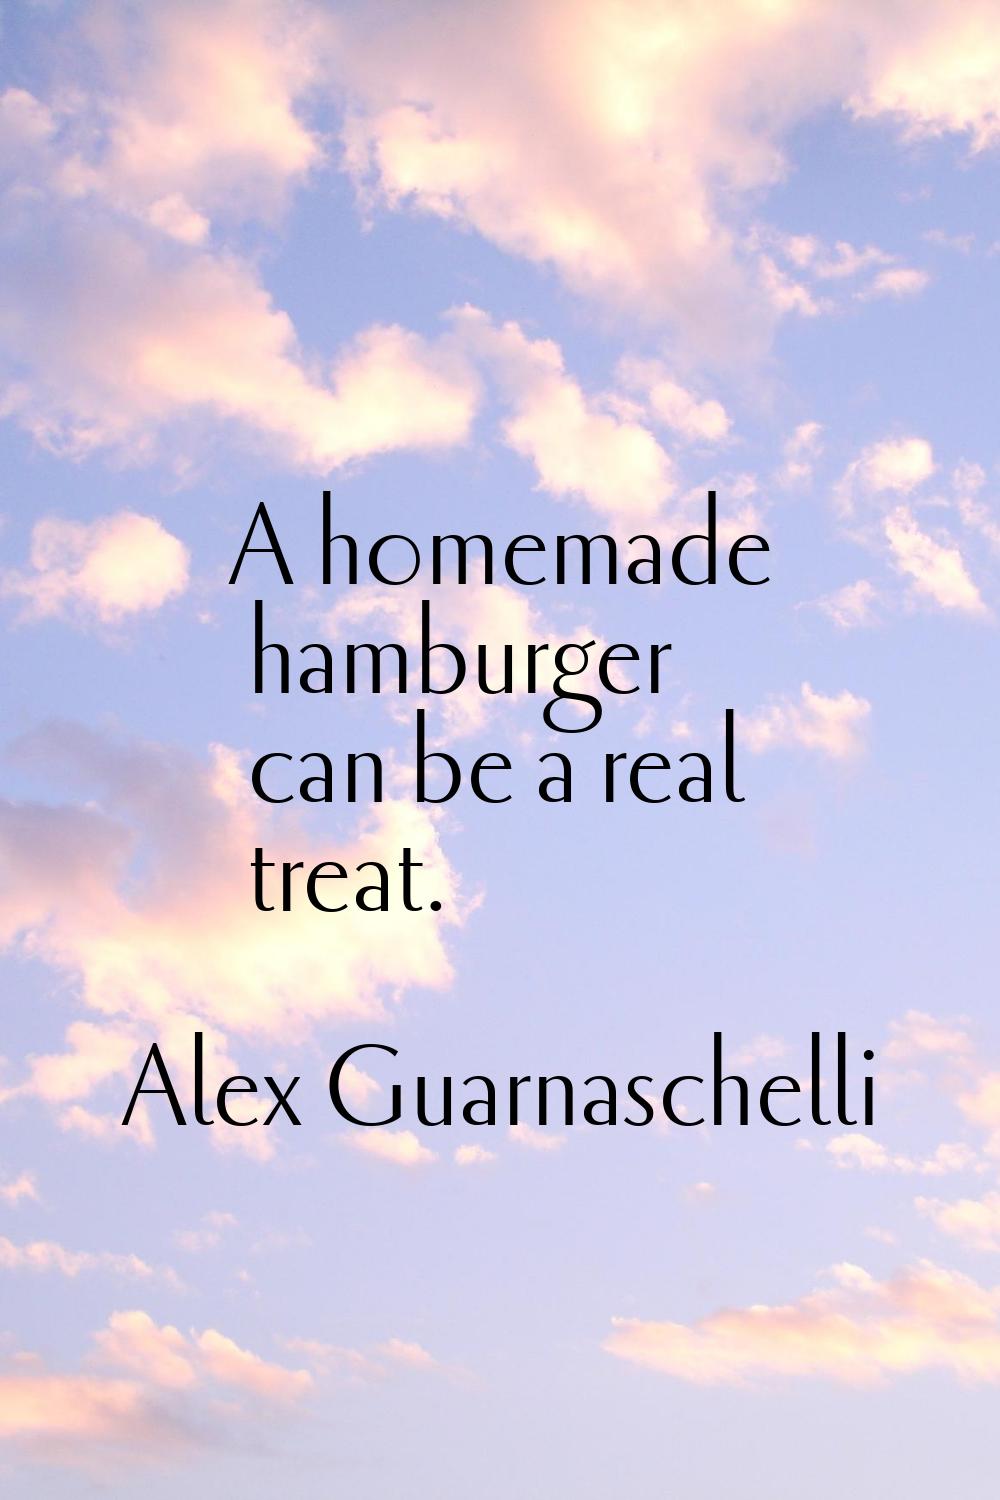 A homemade hamburger can be a real treat.